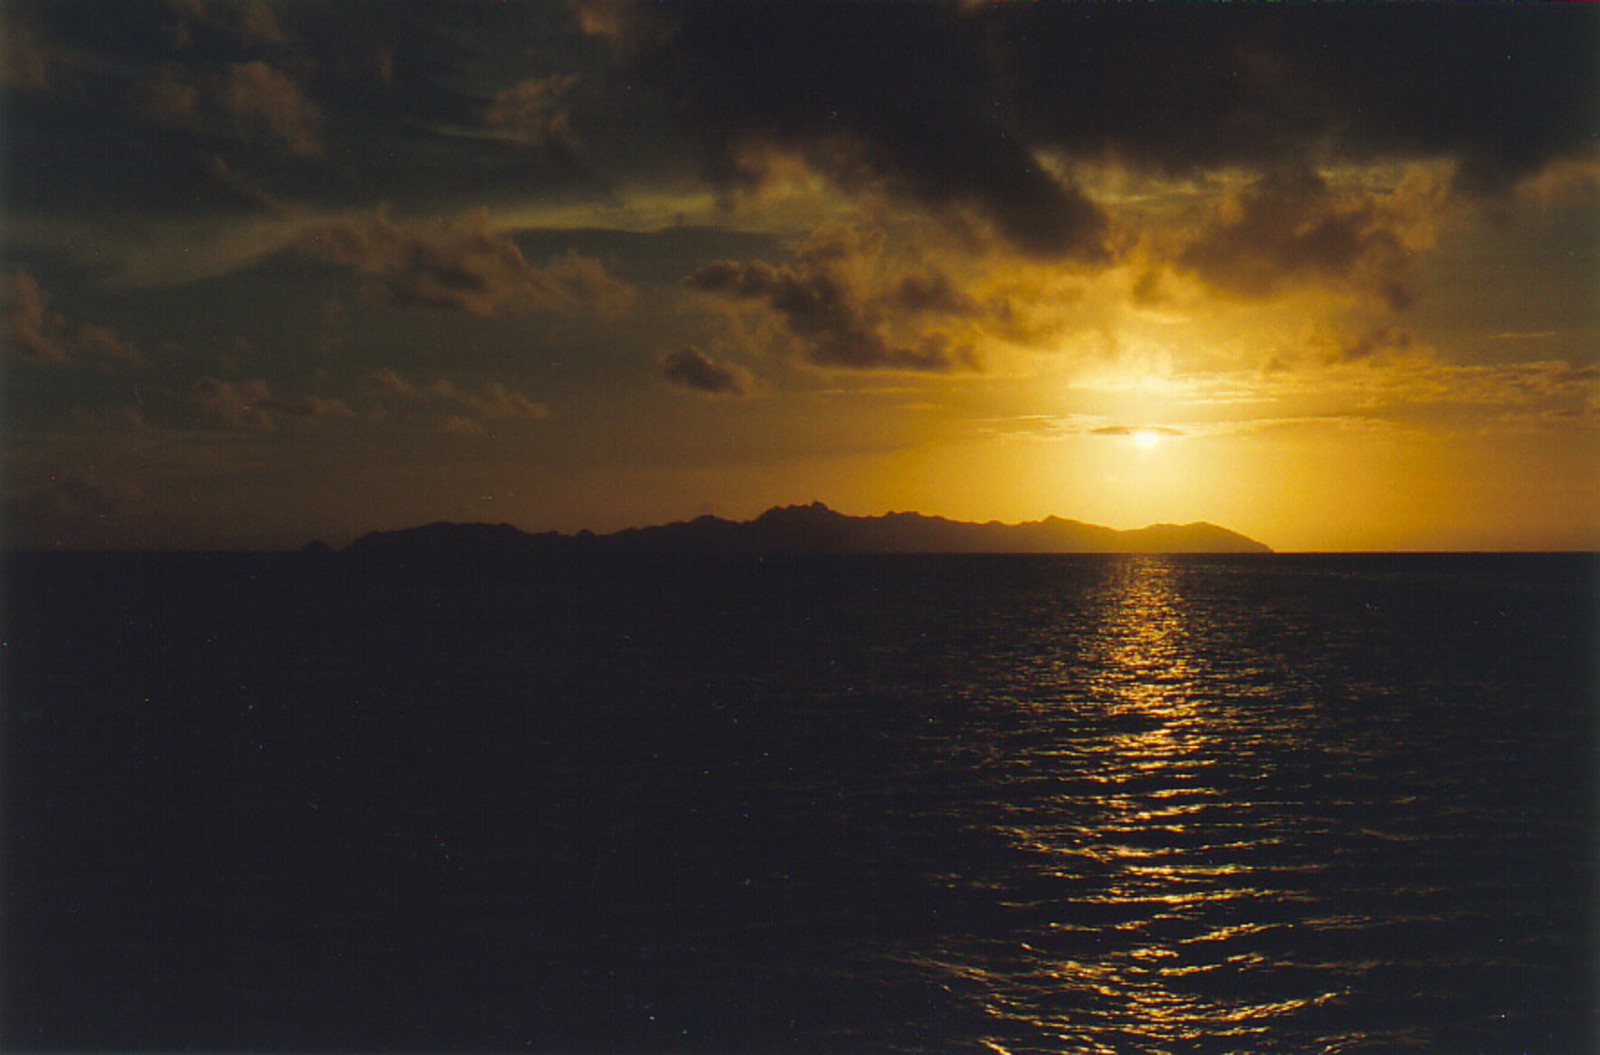 Sunset over Ile Taravai